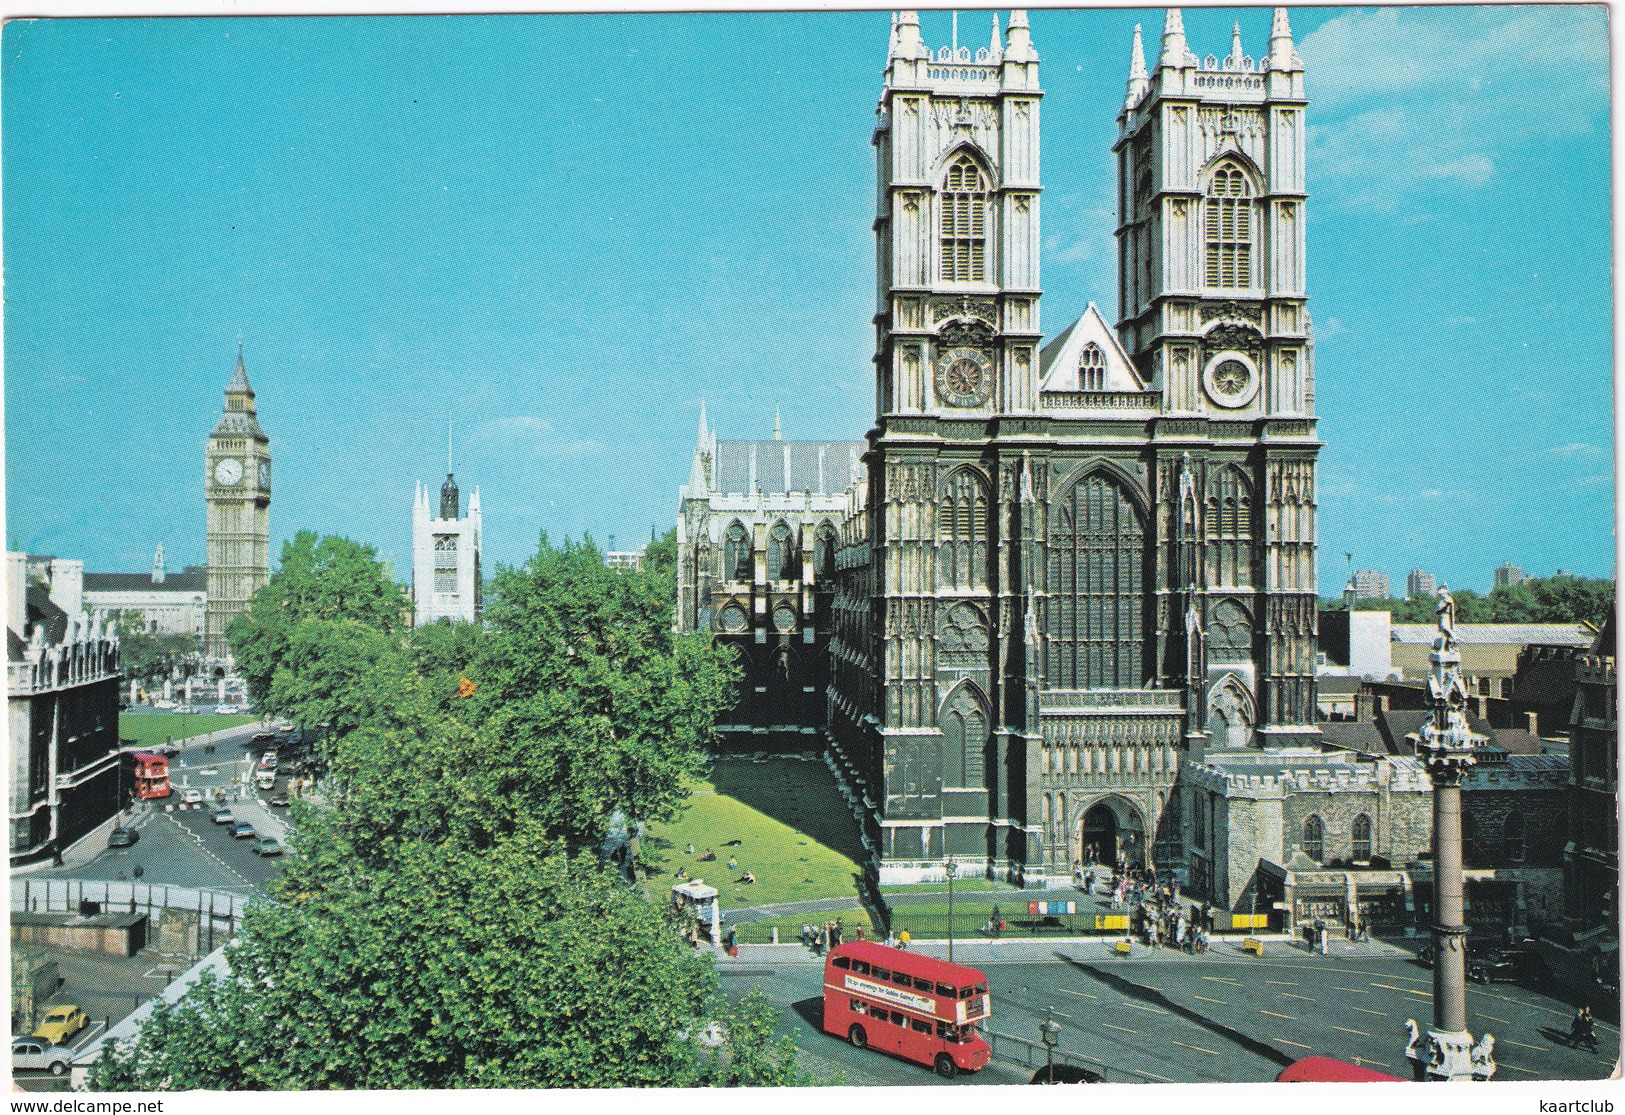 London: CITROËN 2CV, VW 1200 KÄFER/COX, JAGUAR 240, AUSTIN FX TAXI, DOUBLE DECK BUS - Westminster Abbey - Voitures De Tourisme